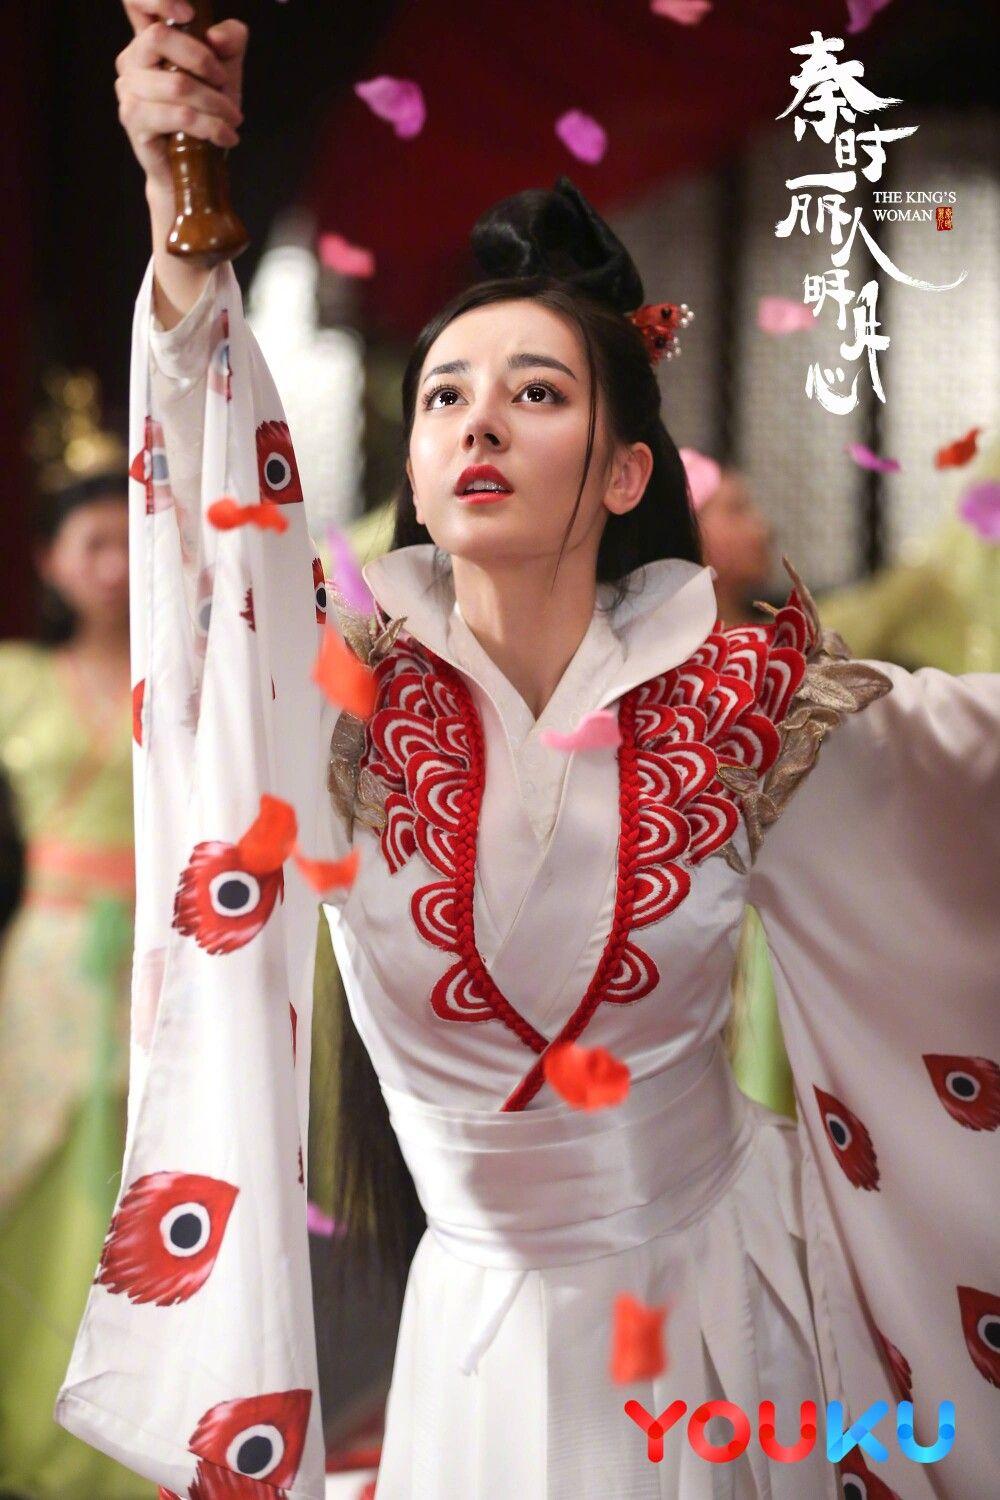 The King's Woman《丽姬传》 Dilmurat, Zhang Bin Bin. 迪